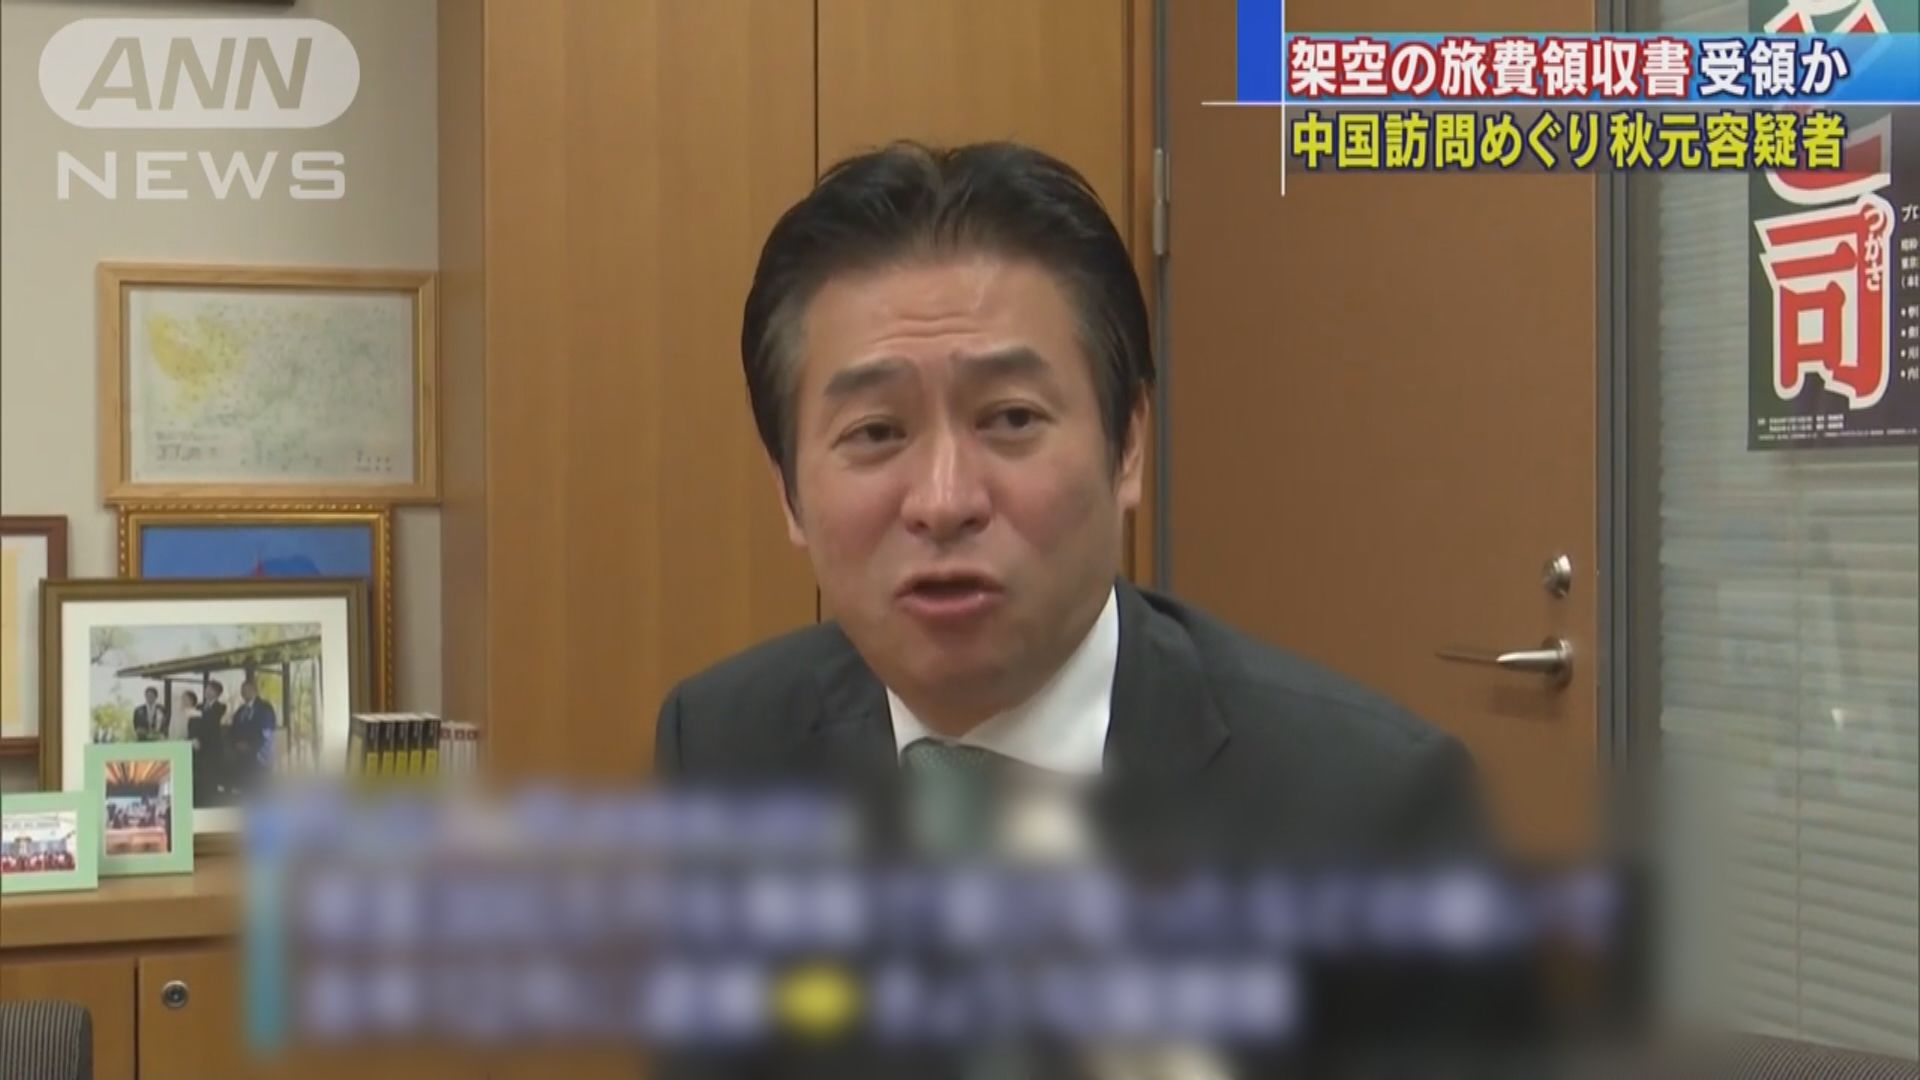 涉嫌受賄的日本眾議員秋元司再次被捕